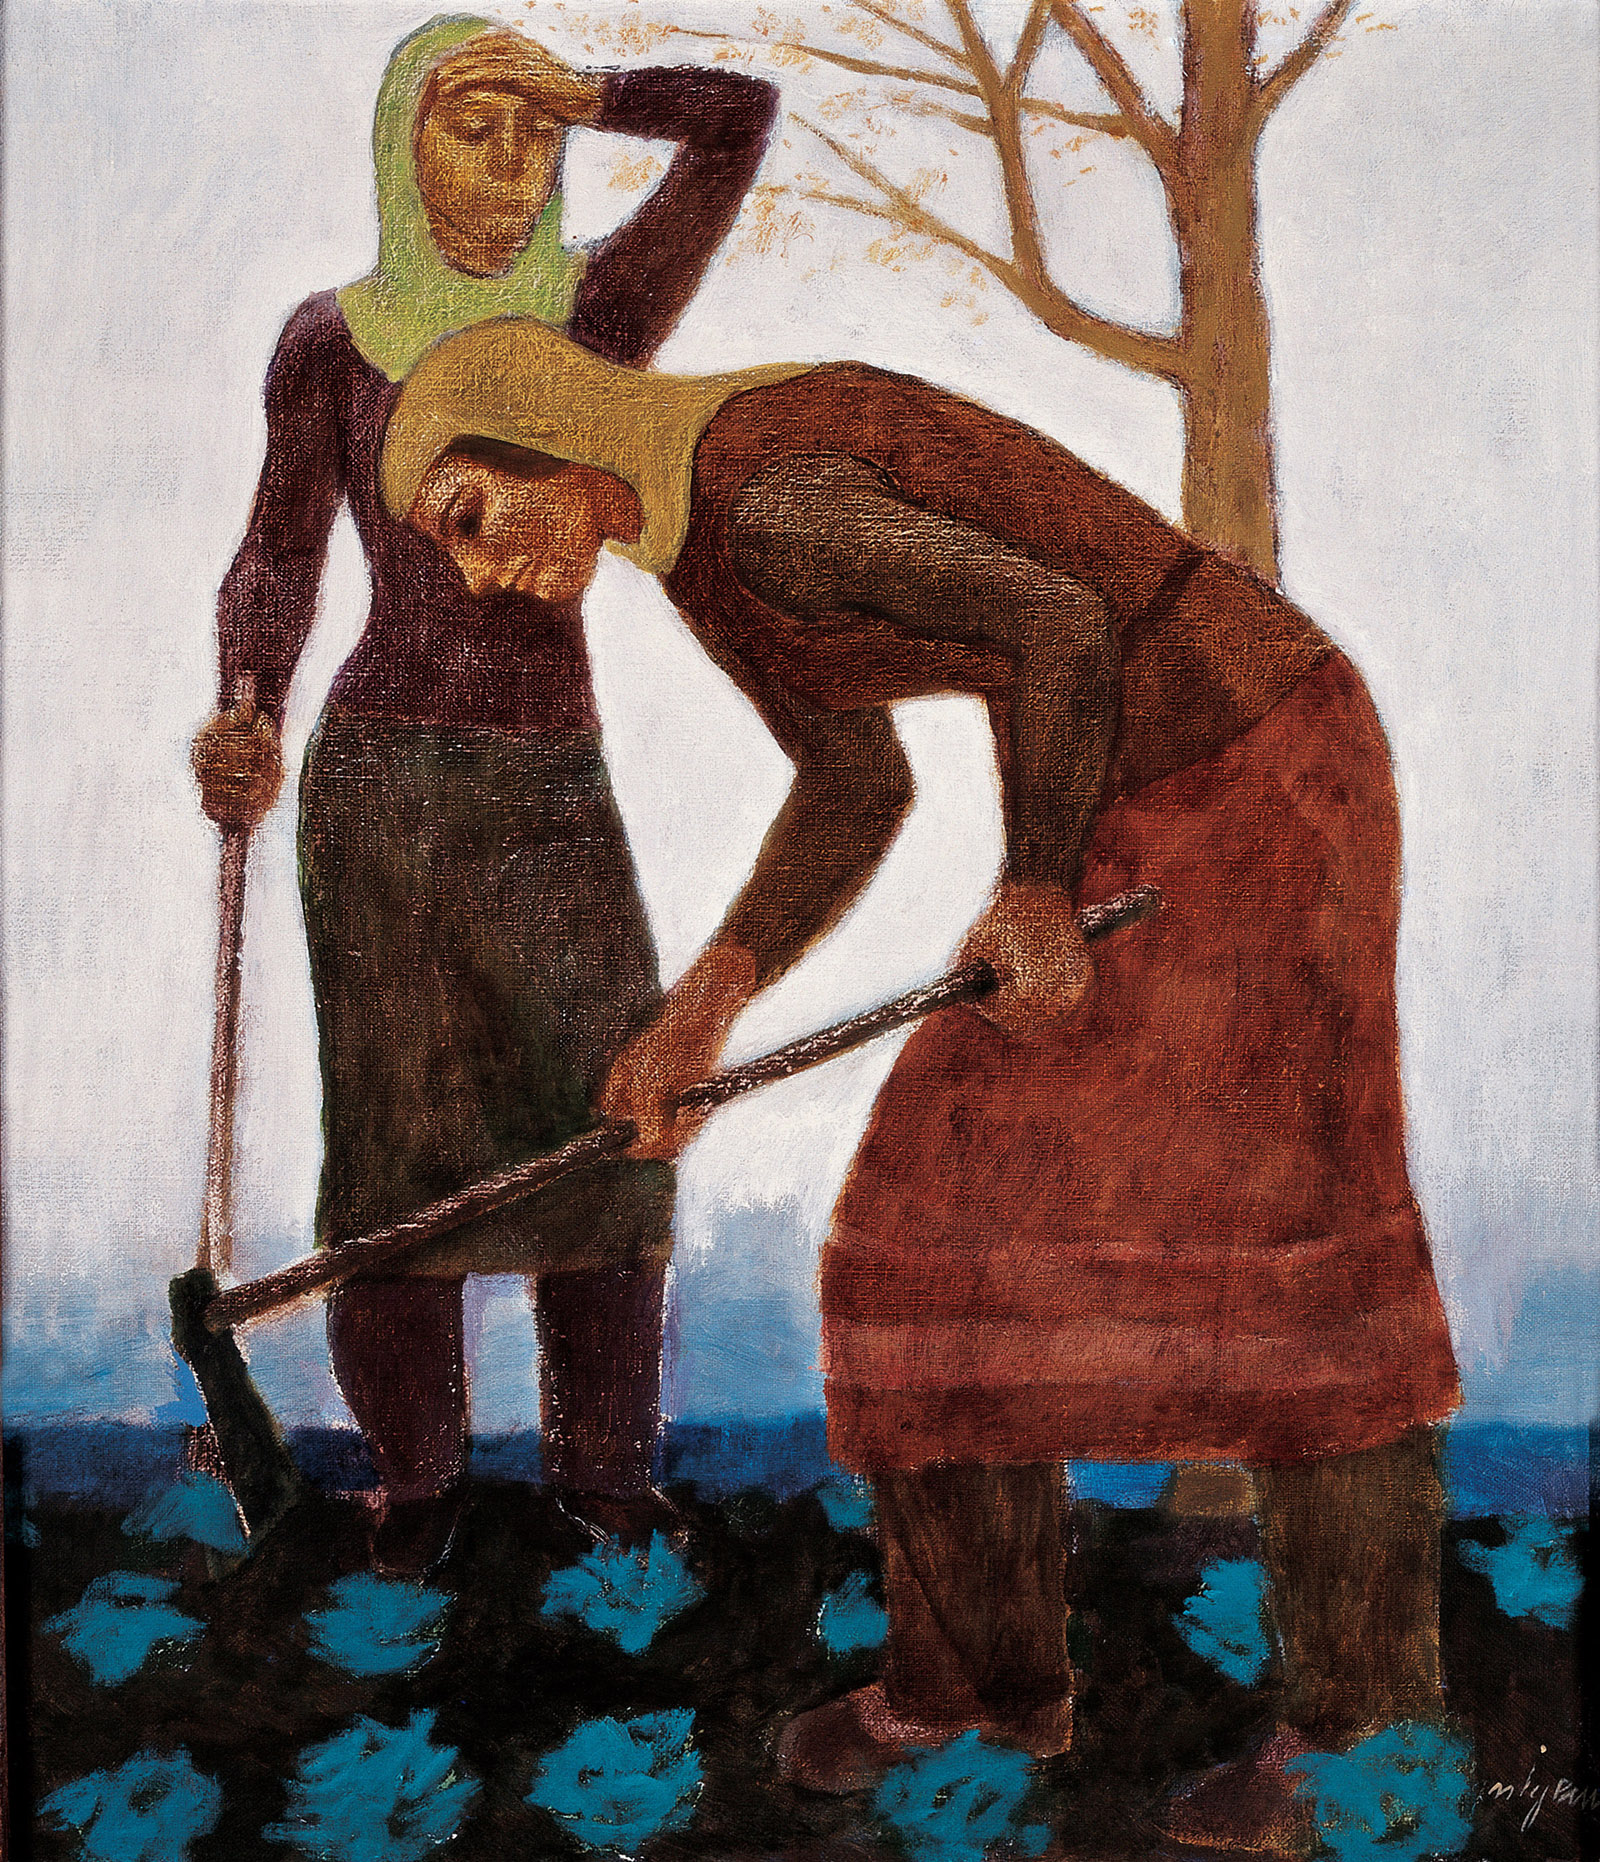 Toprağı İşleyen Kadınlar / Women Working The Fields - s1137-001